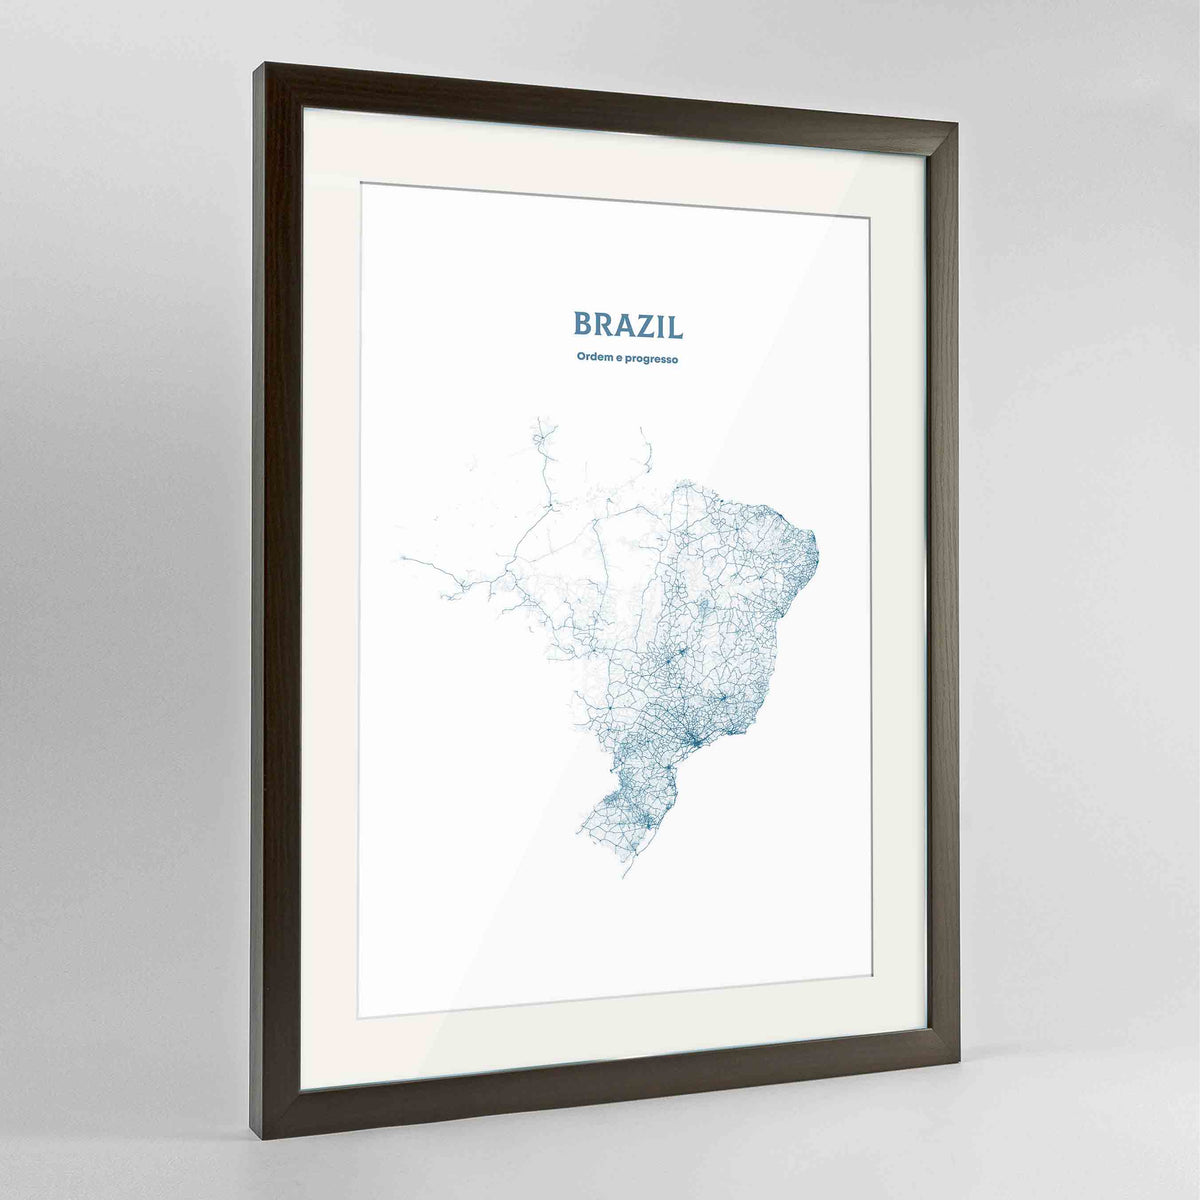 Brazil - All Roads Art Print - Framed